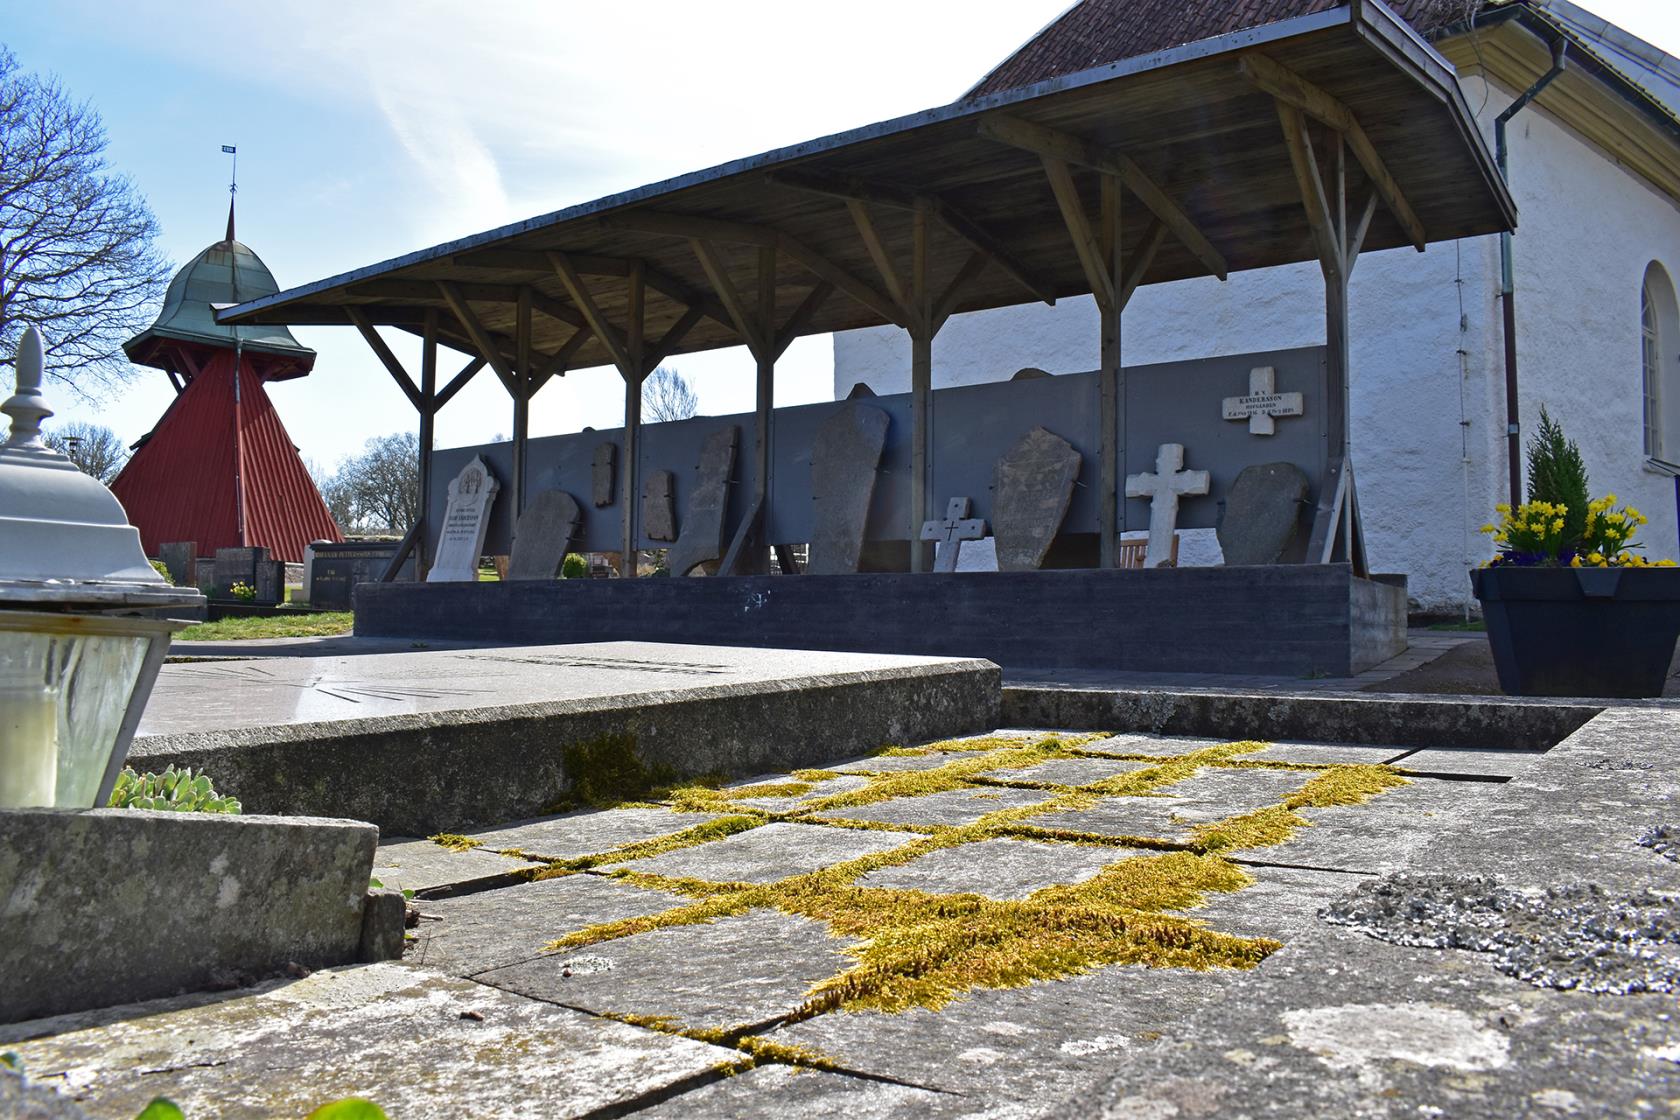 Bergums kyrkogård, lapidariets gamla gravstenar uppställda under tak  med kyrkan i bakgrunden